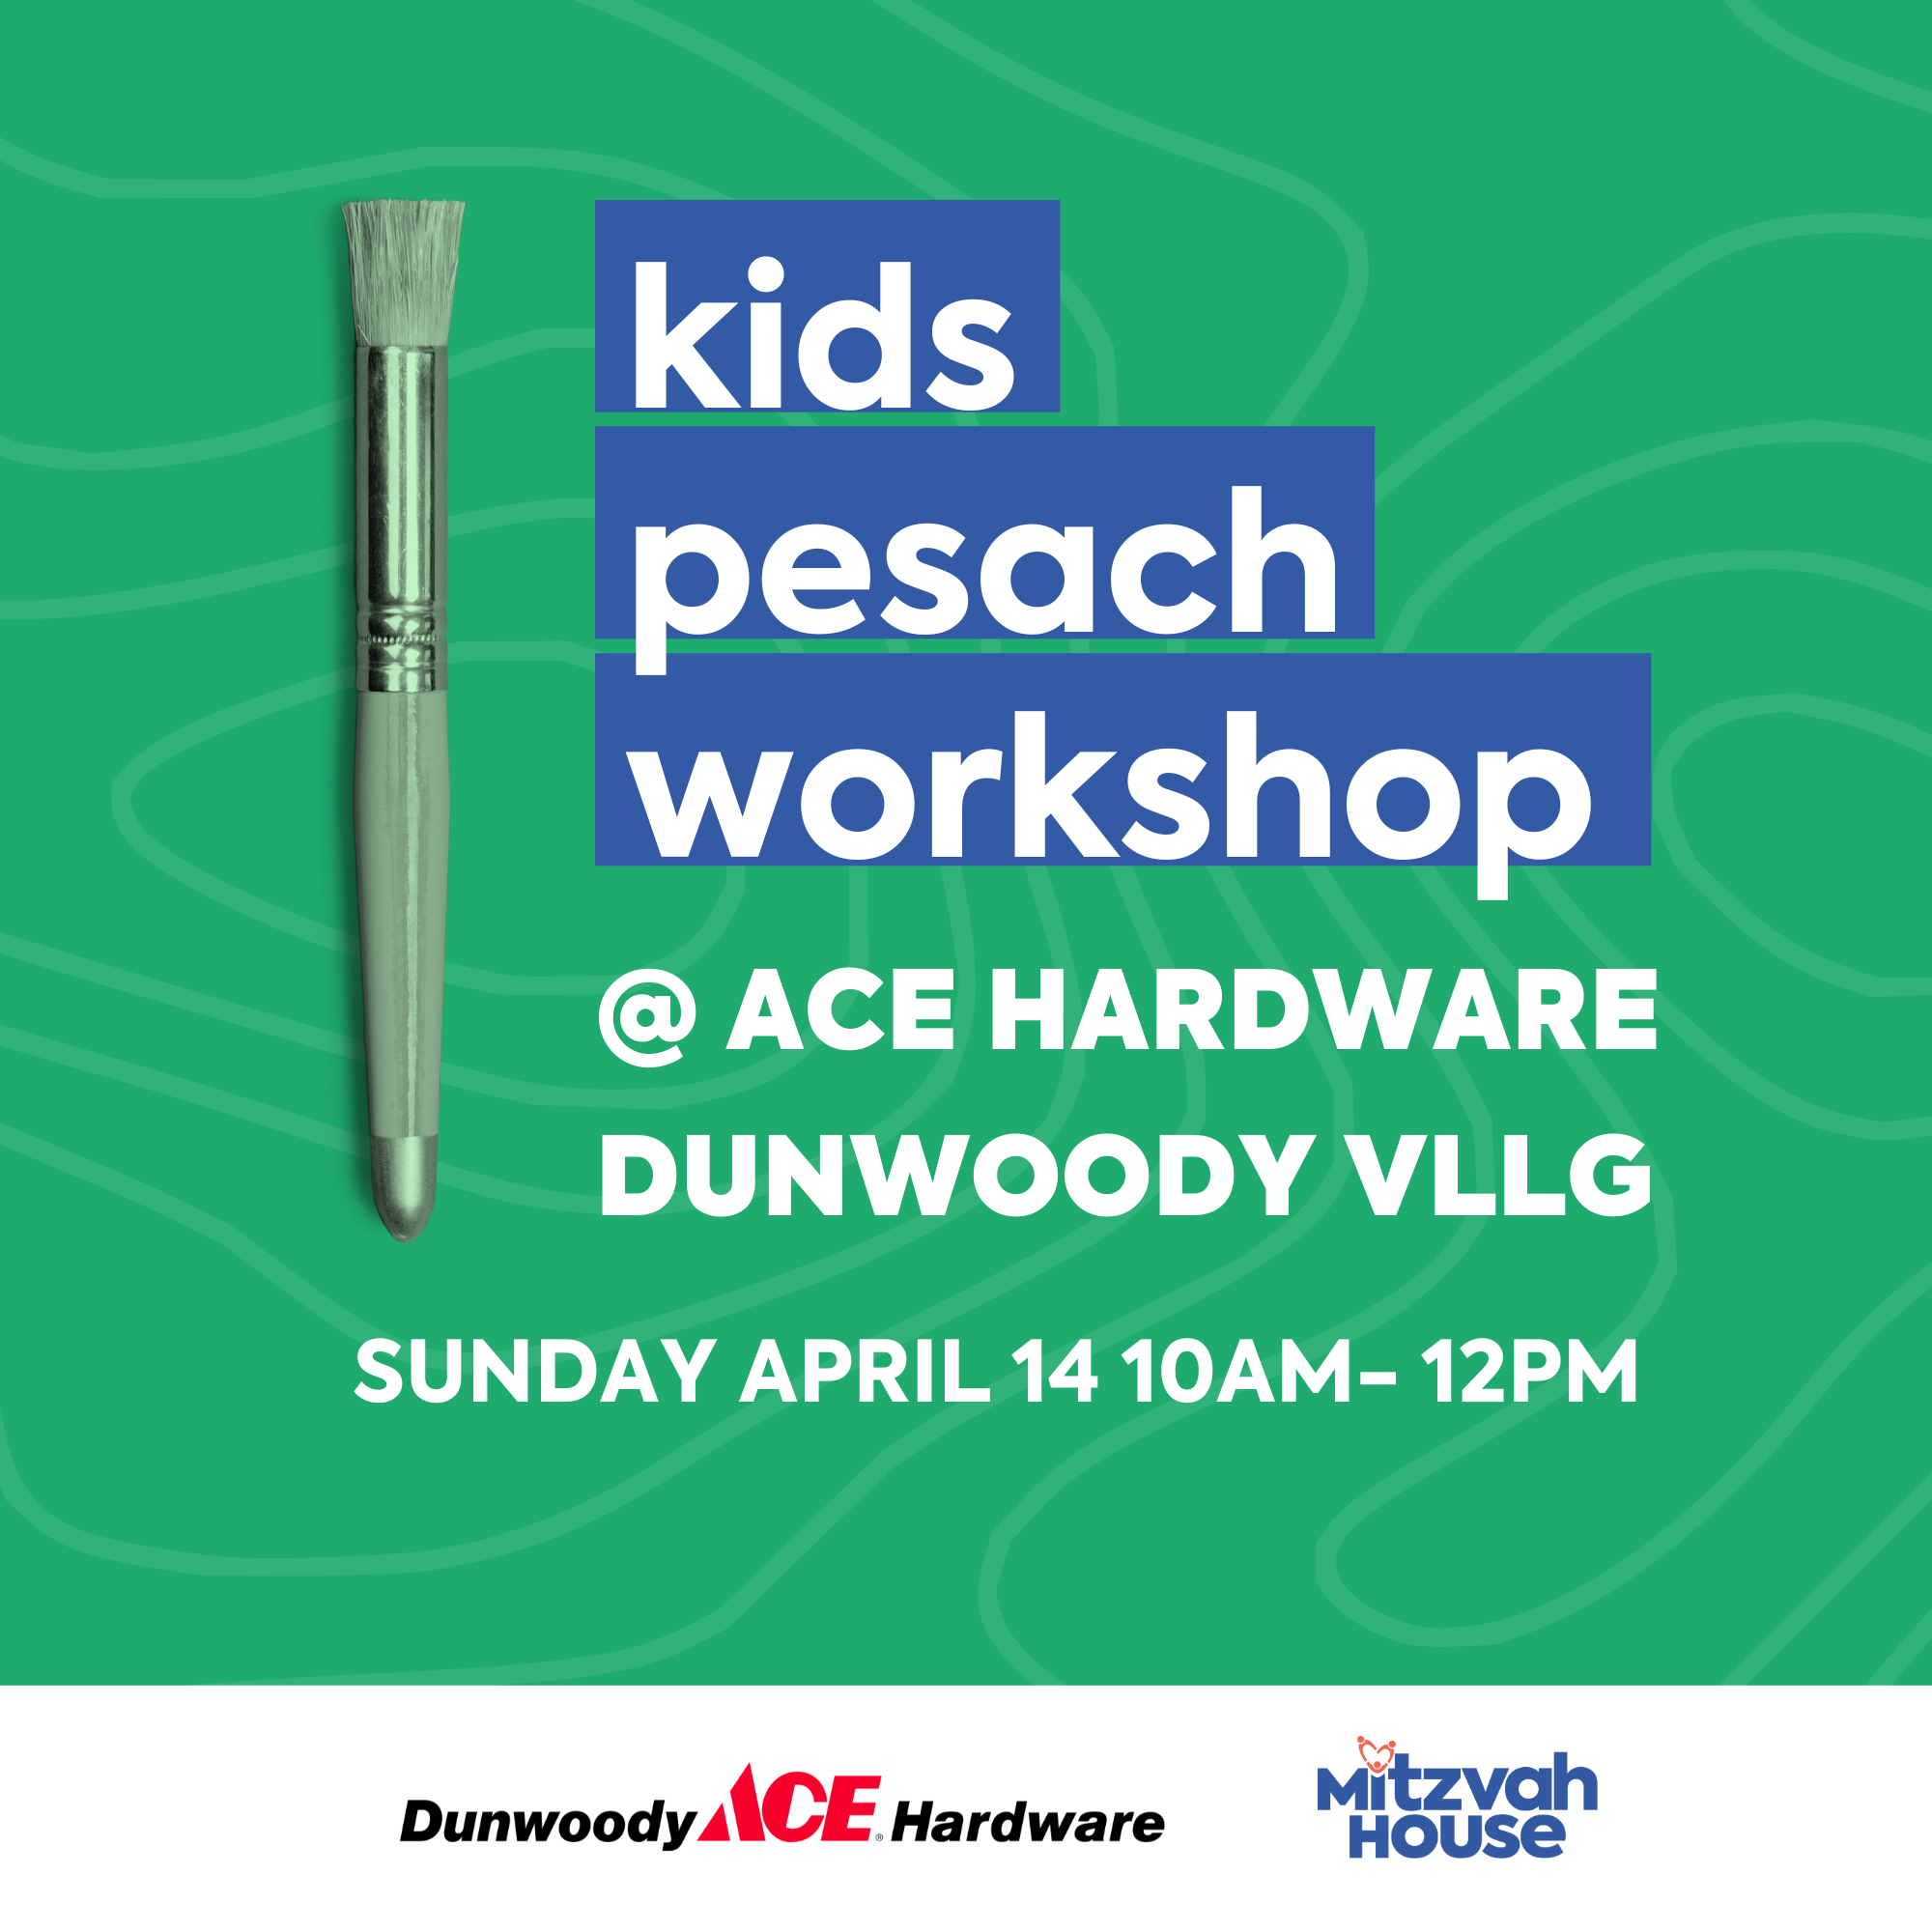 Kids' Pesach Workshop @ ACE Hardware